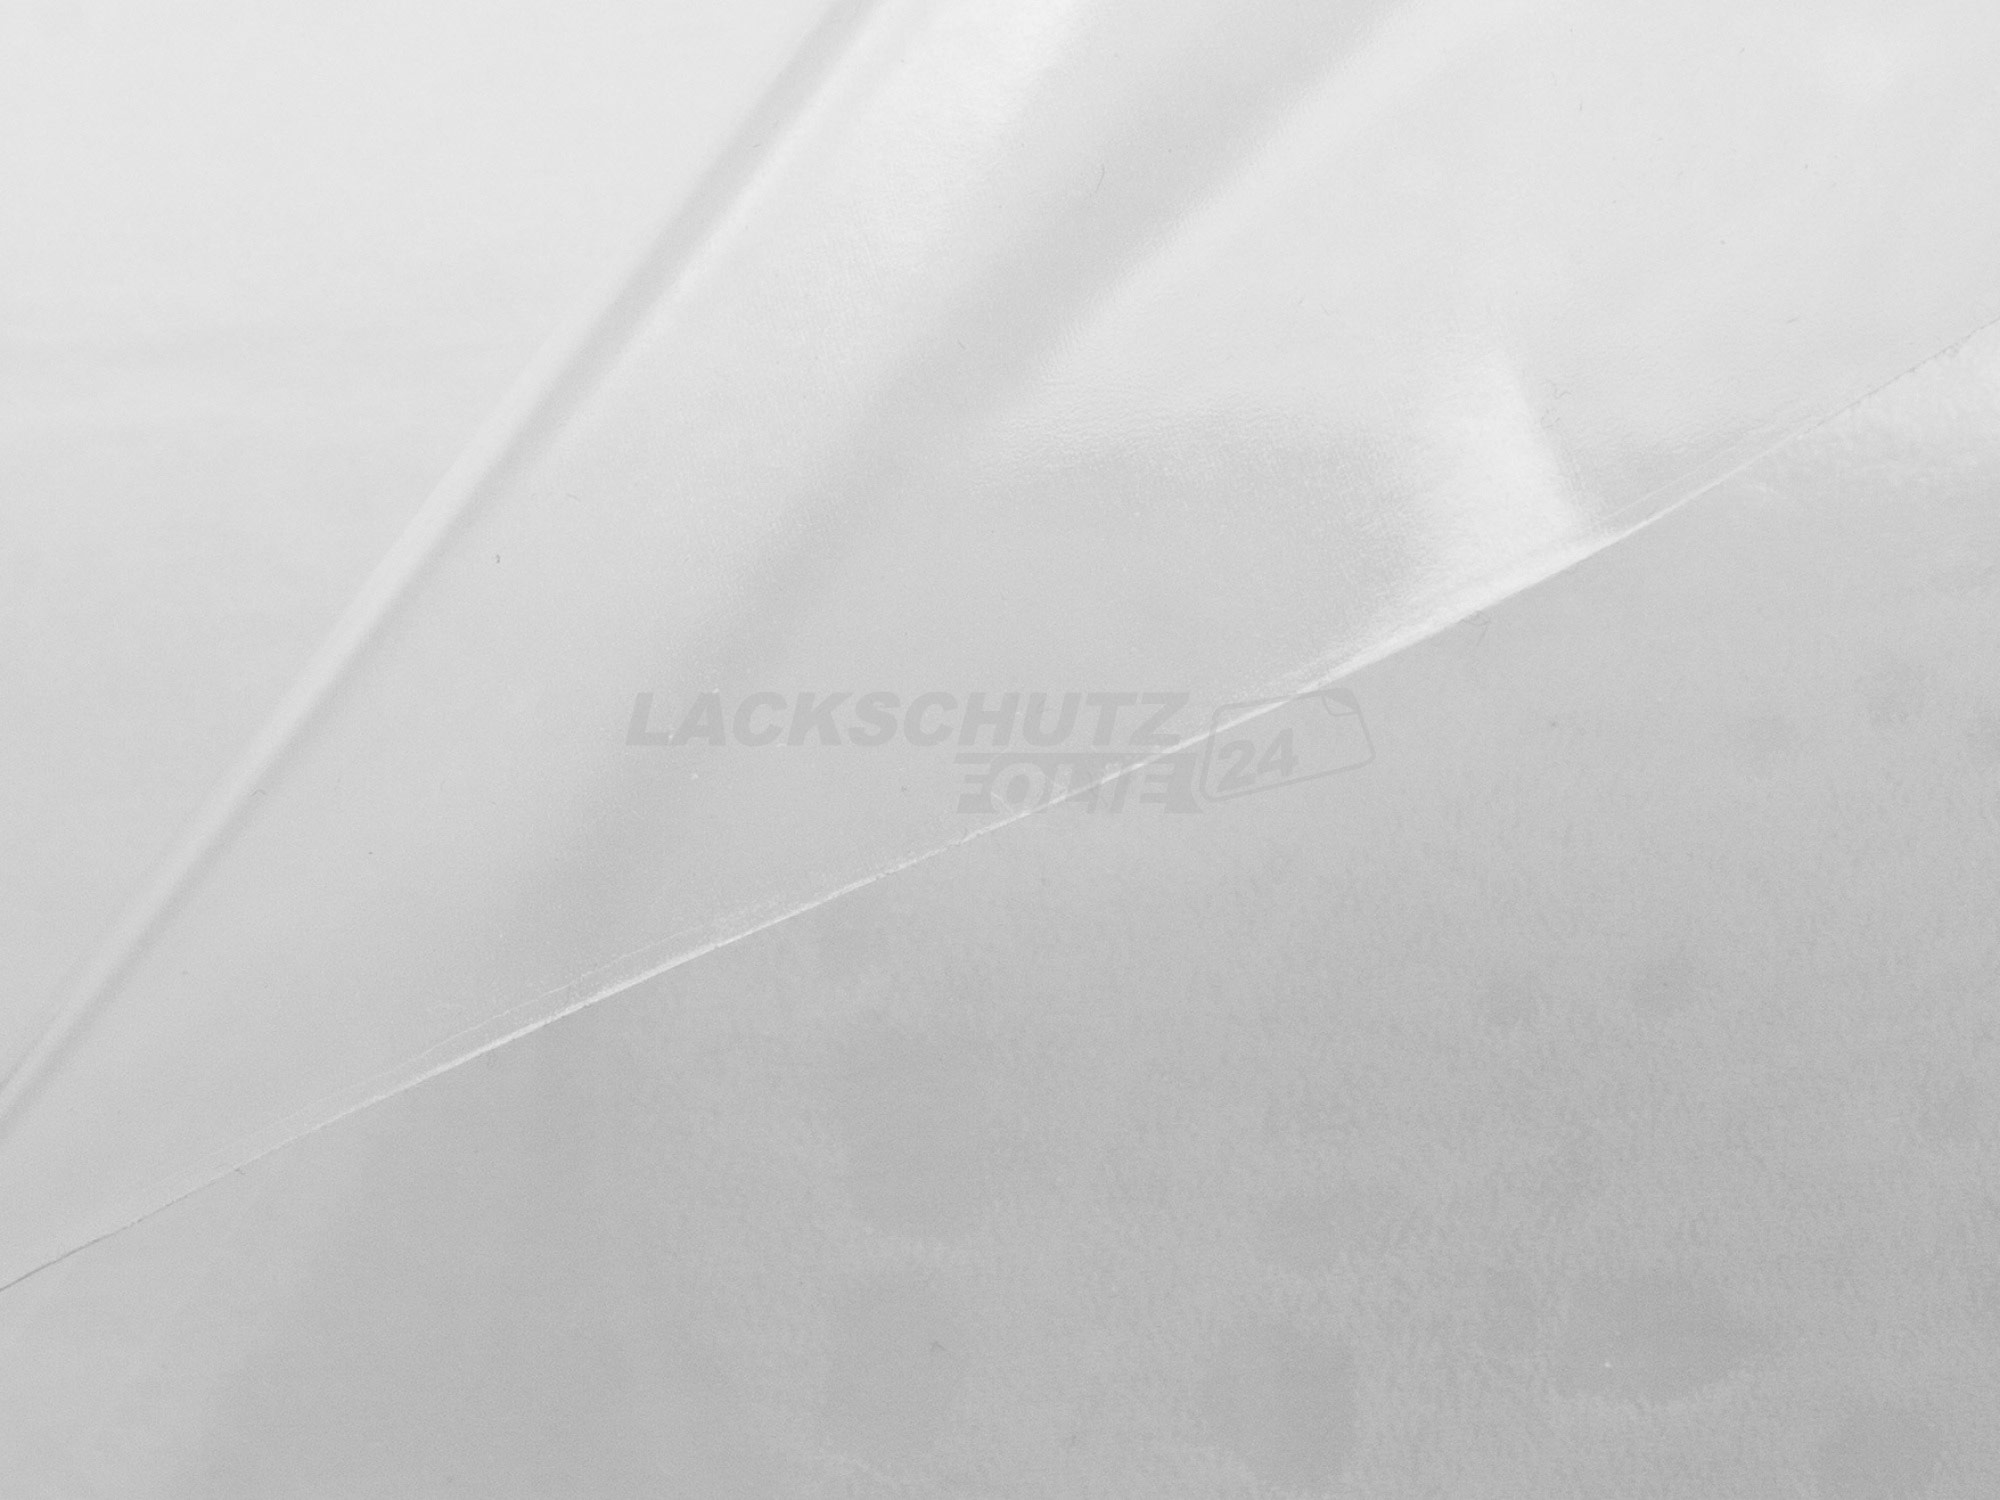 Ladekantenschutzfolie - Transparent Glatt Hochglänzend 240 µm stark für Smart ForFour Typ 453, ab BJ 11/2014